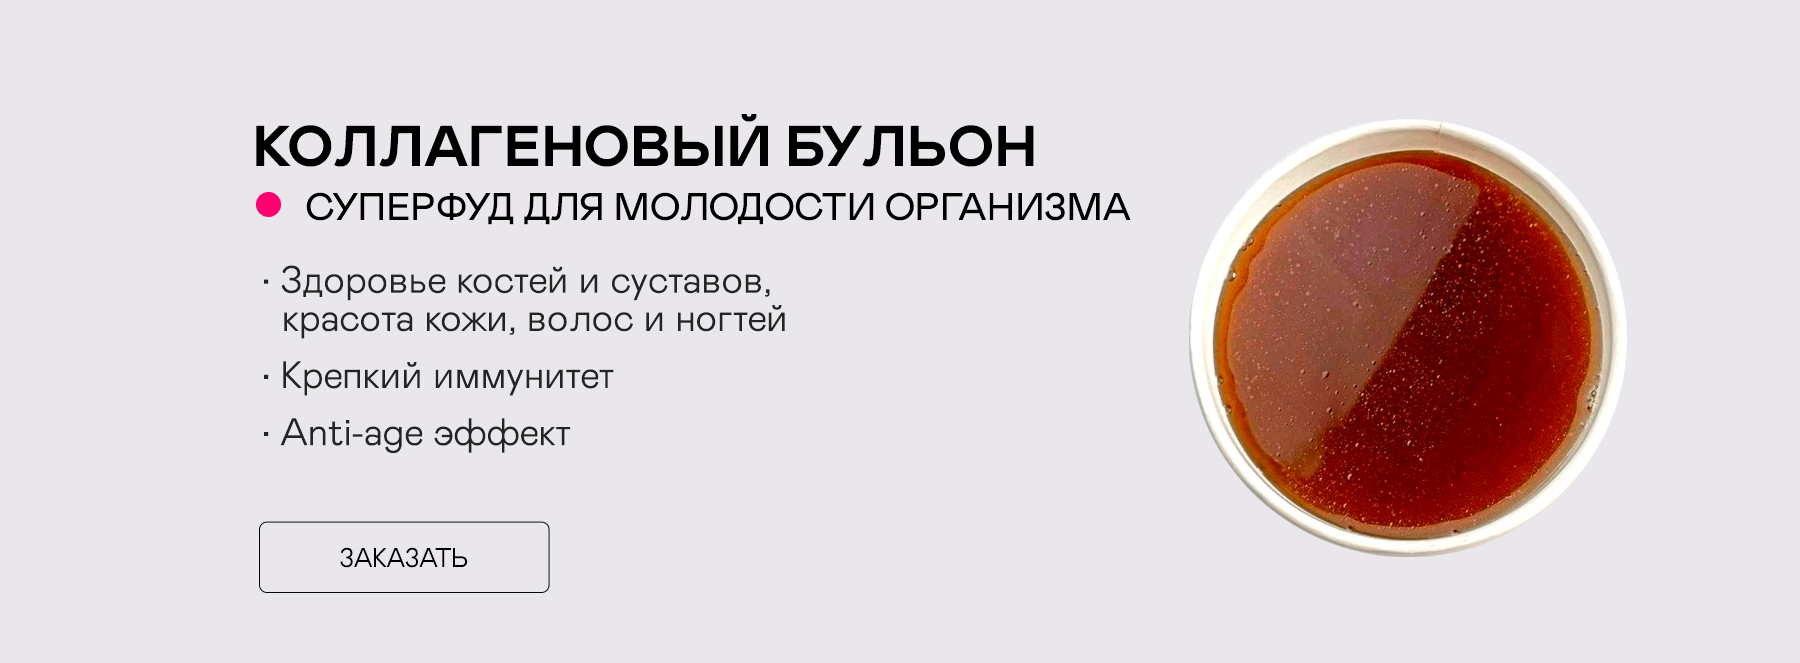 Источник молодости и здоровья - коллагеновый бульон с доставкой по Москве и МО от сервиса правильного питания JUST FOR YOU